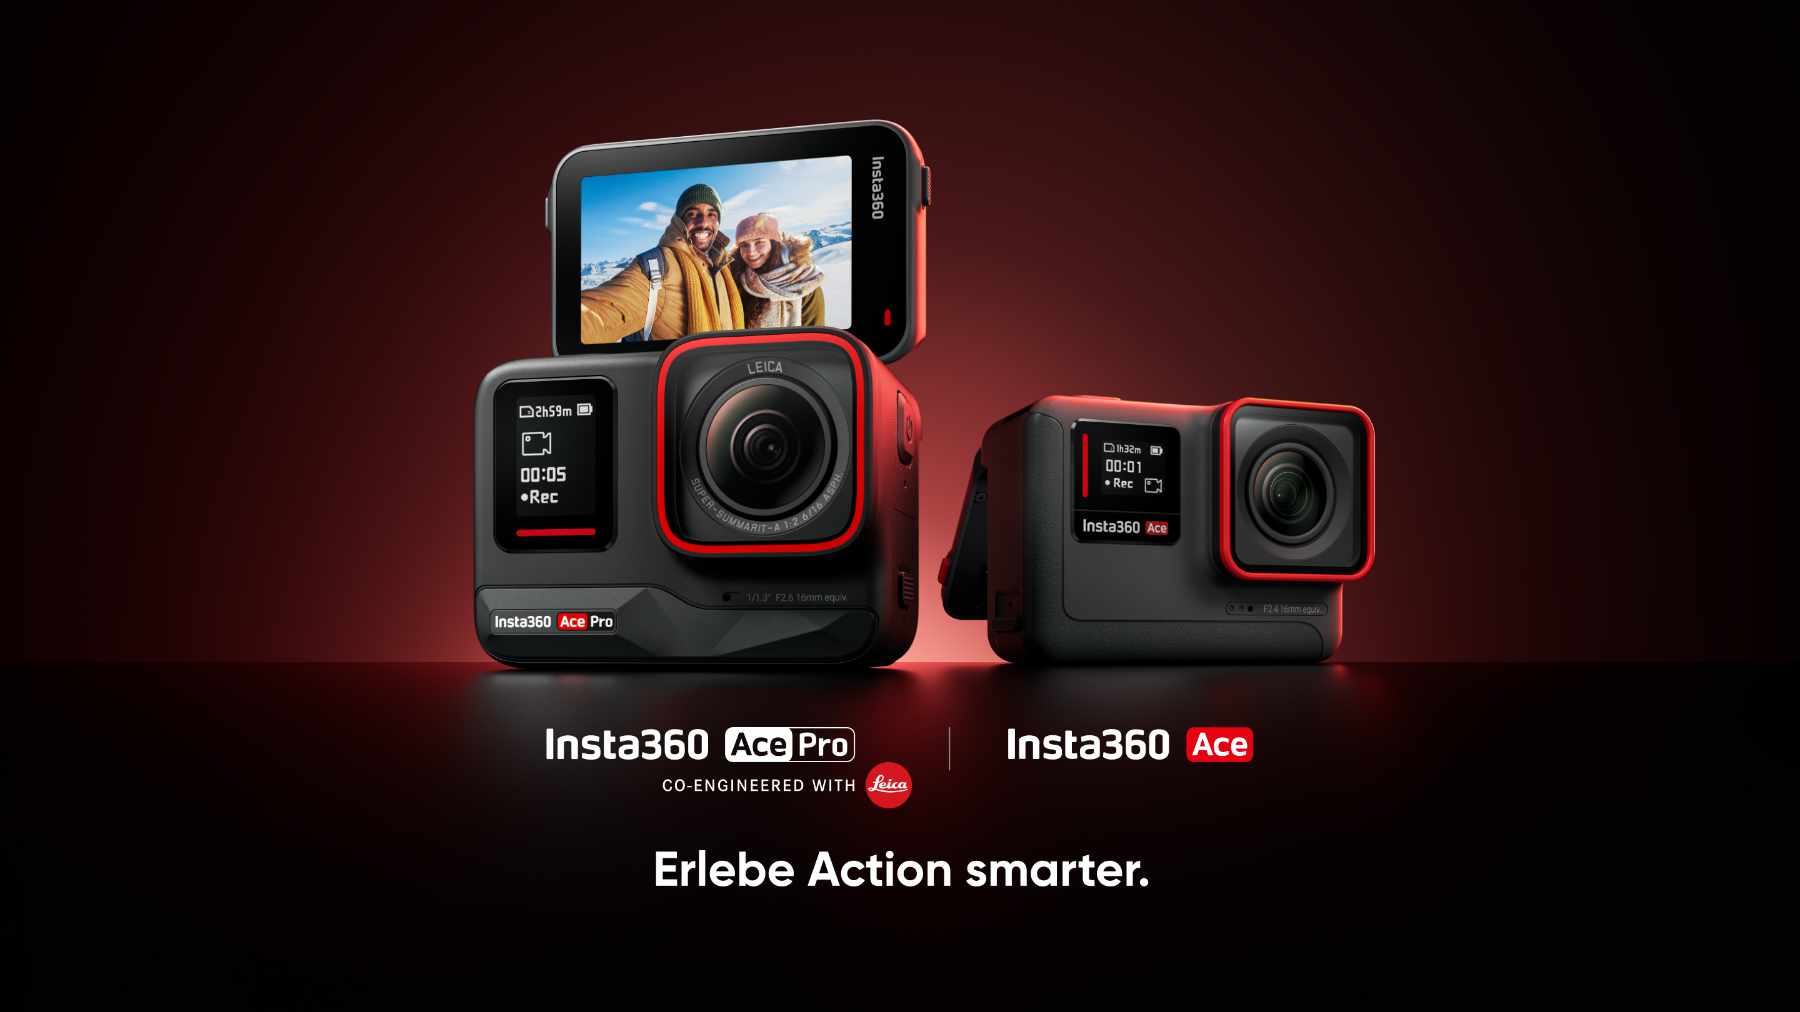 vorgestellt Actionkameras neue Zwei Ace Insta360 Pro: Ace und